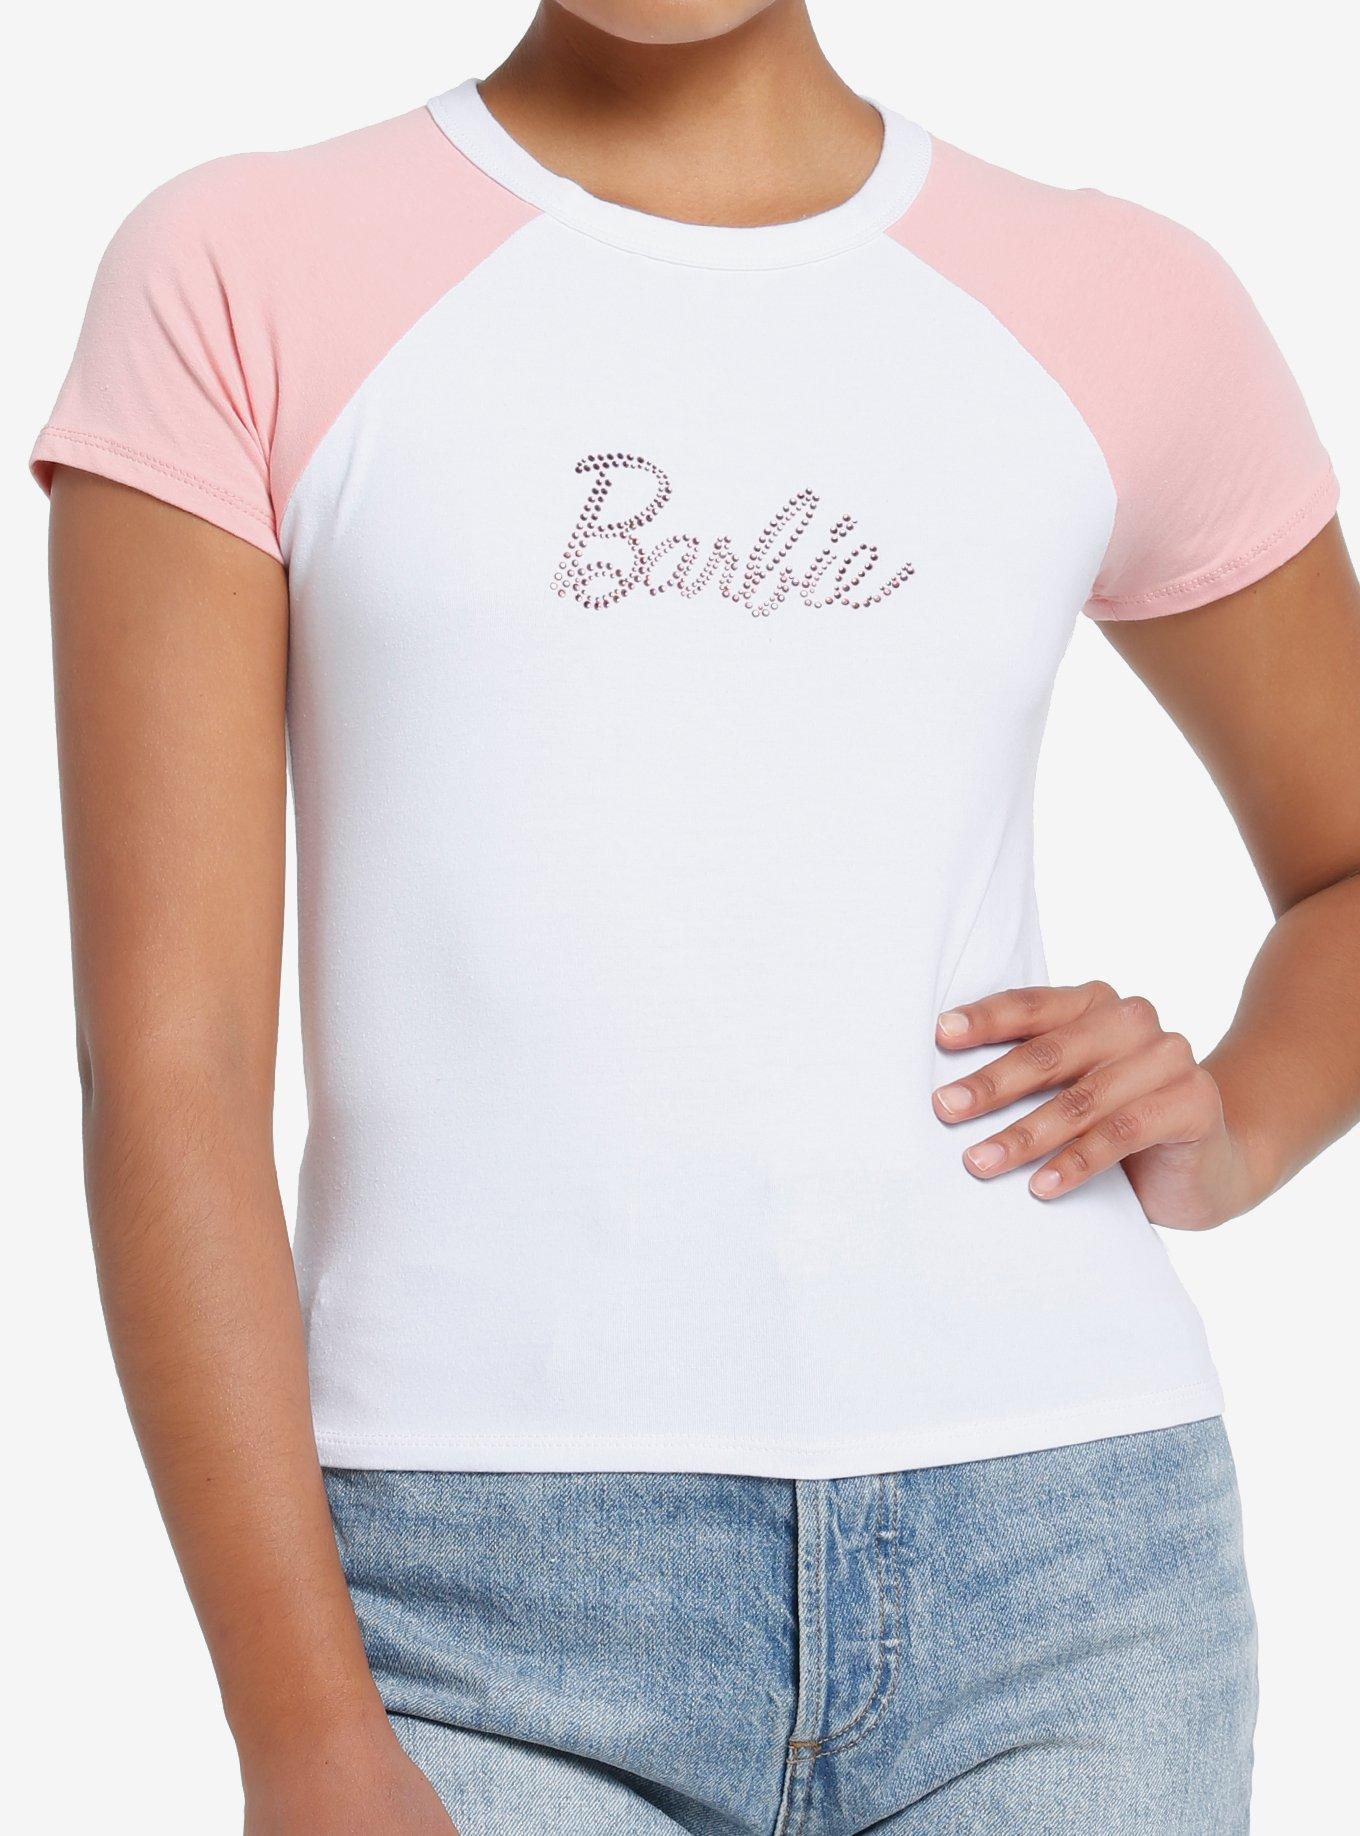 Barbie Rhinestone Raglan Girls Baby T-Shirt Hot Topic